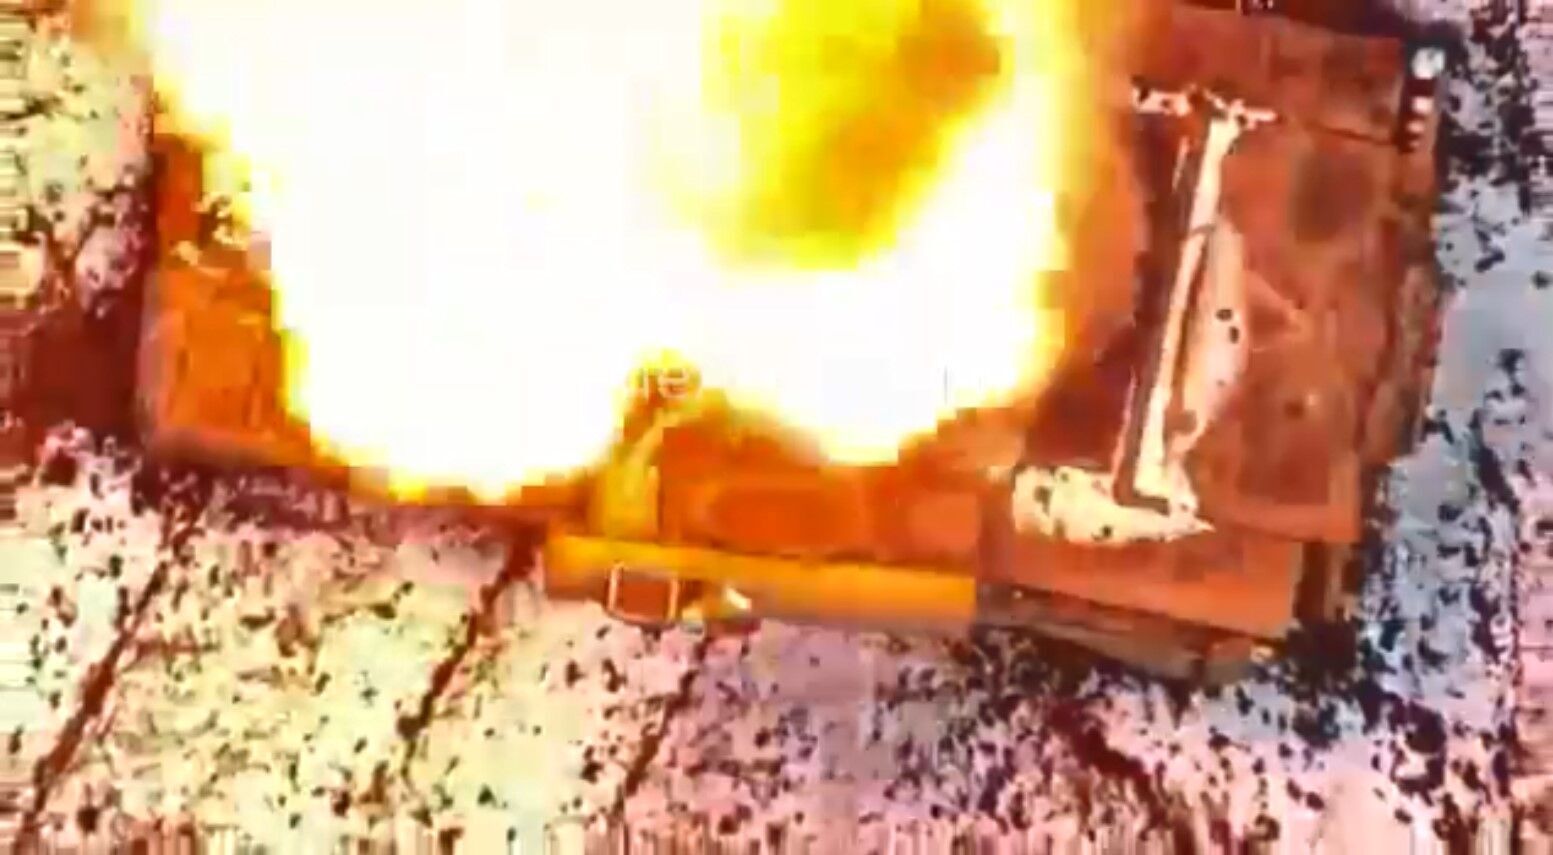 ВСУ уничтожили танк Т-80 армии рф оригинальным способом: помогло устройство ценой 200 грн (видео)